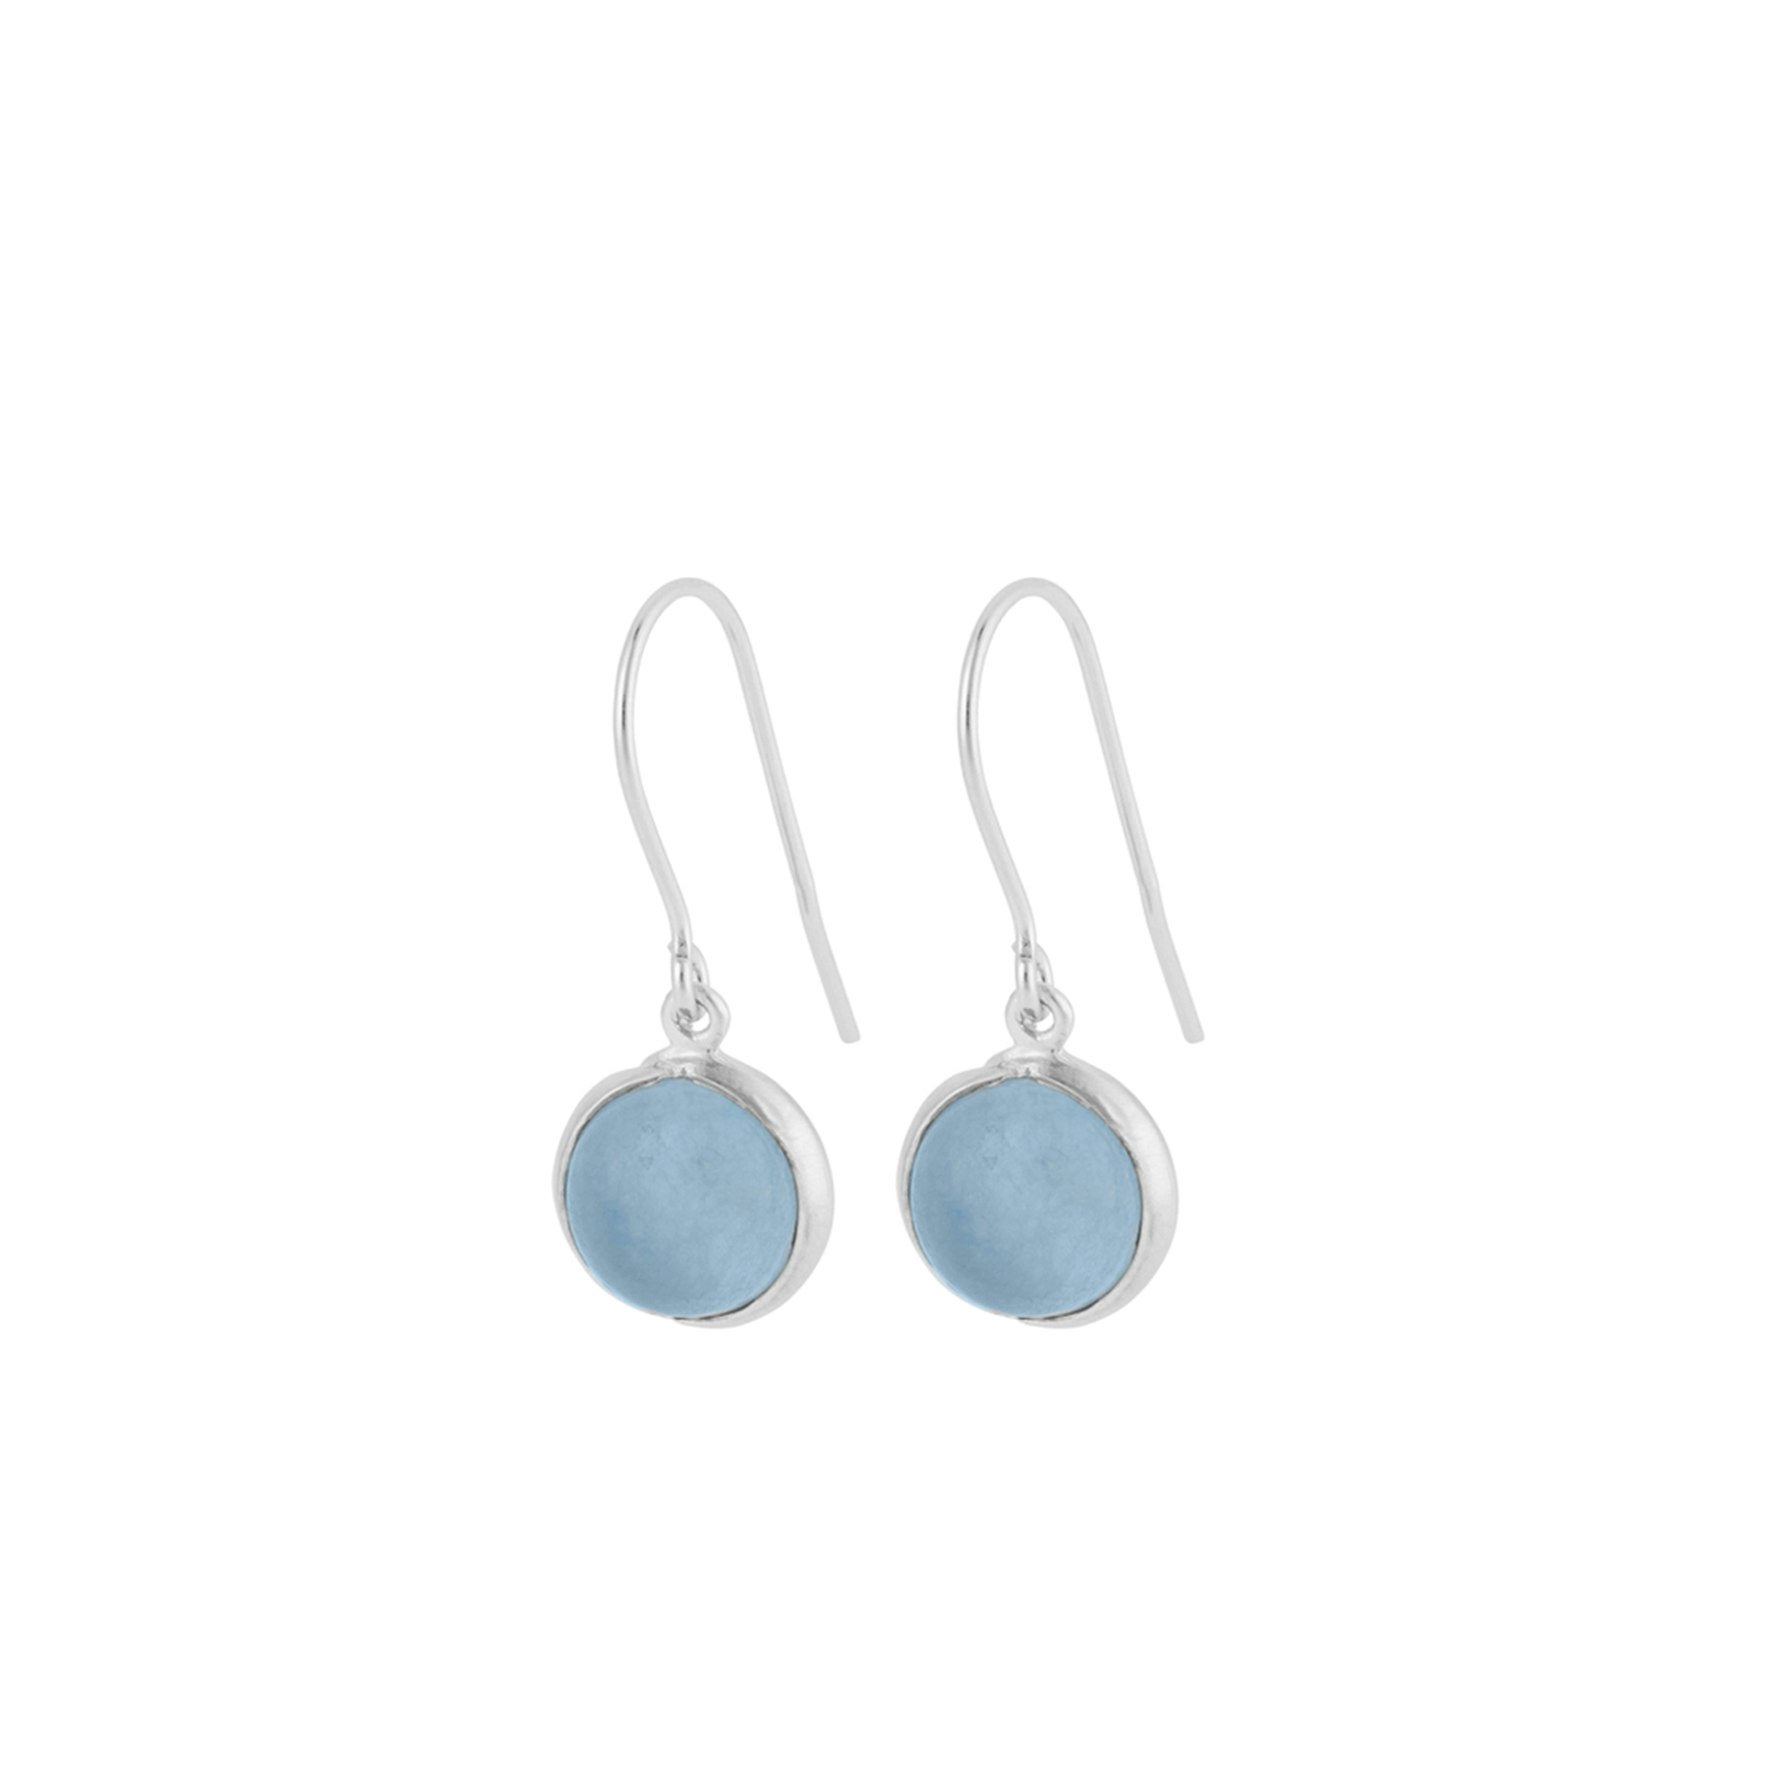 Aura Blue Earhooks from Pernille Corydon in Silver Sterling 925